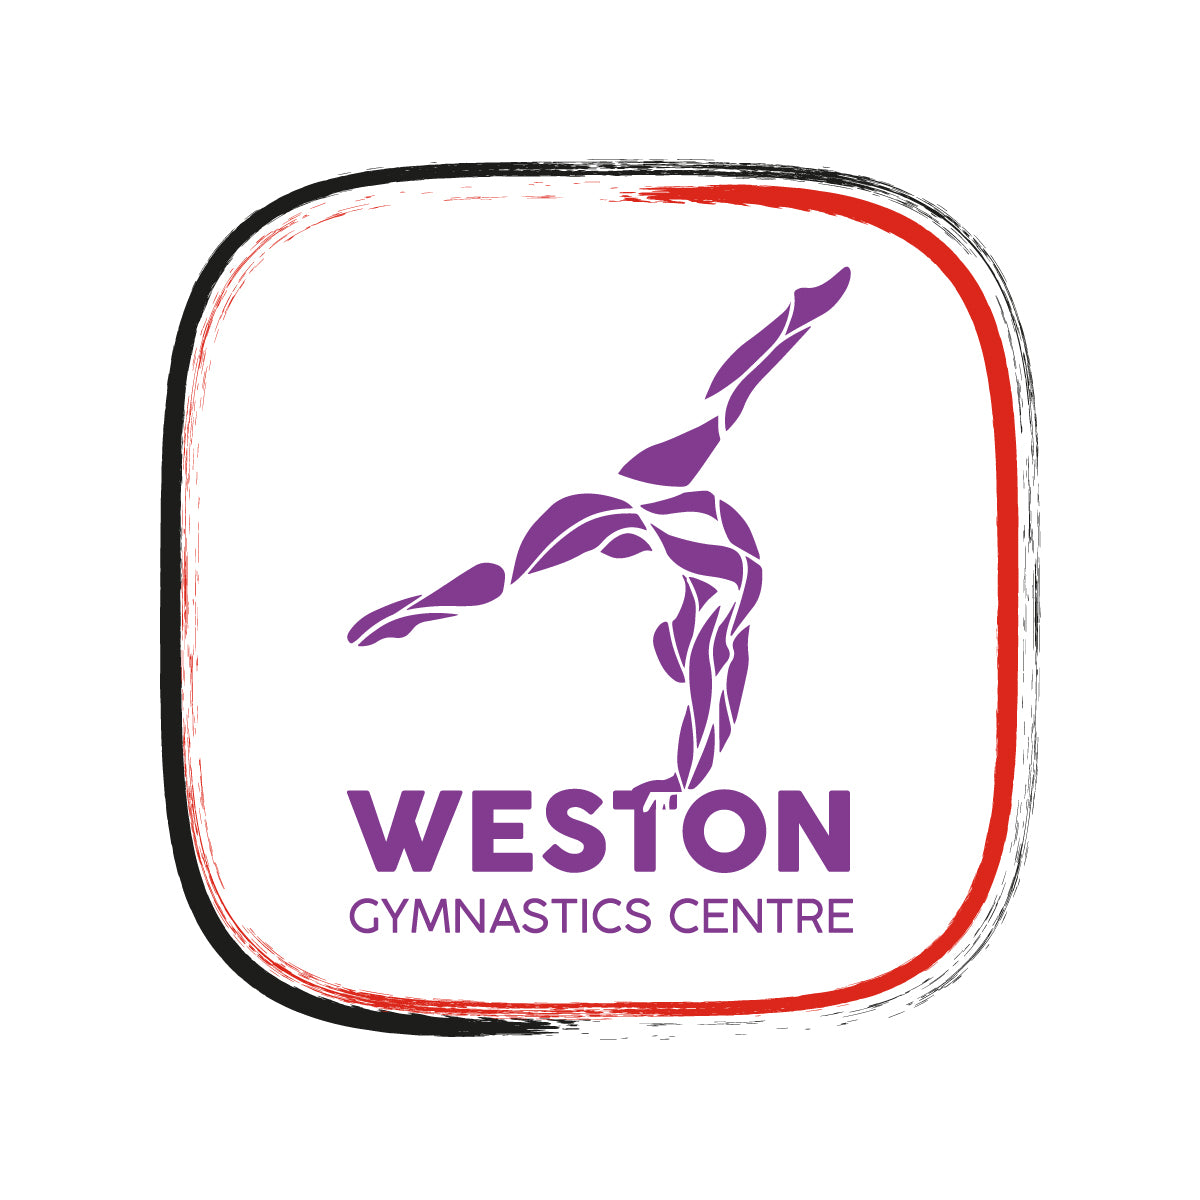 Weston Gymnastics Centre